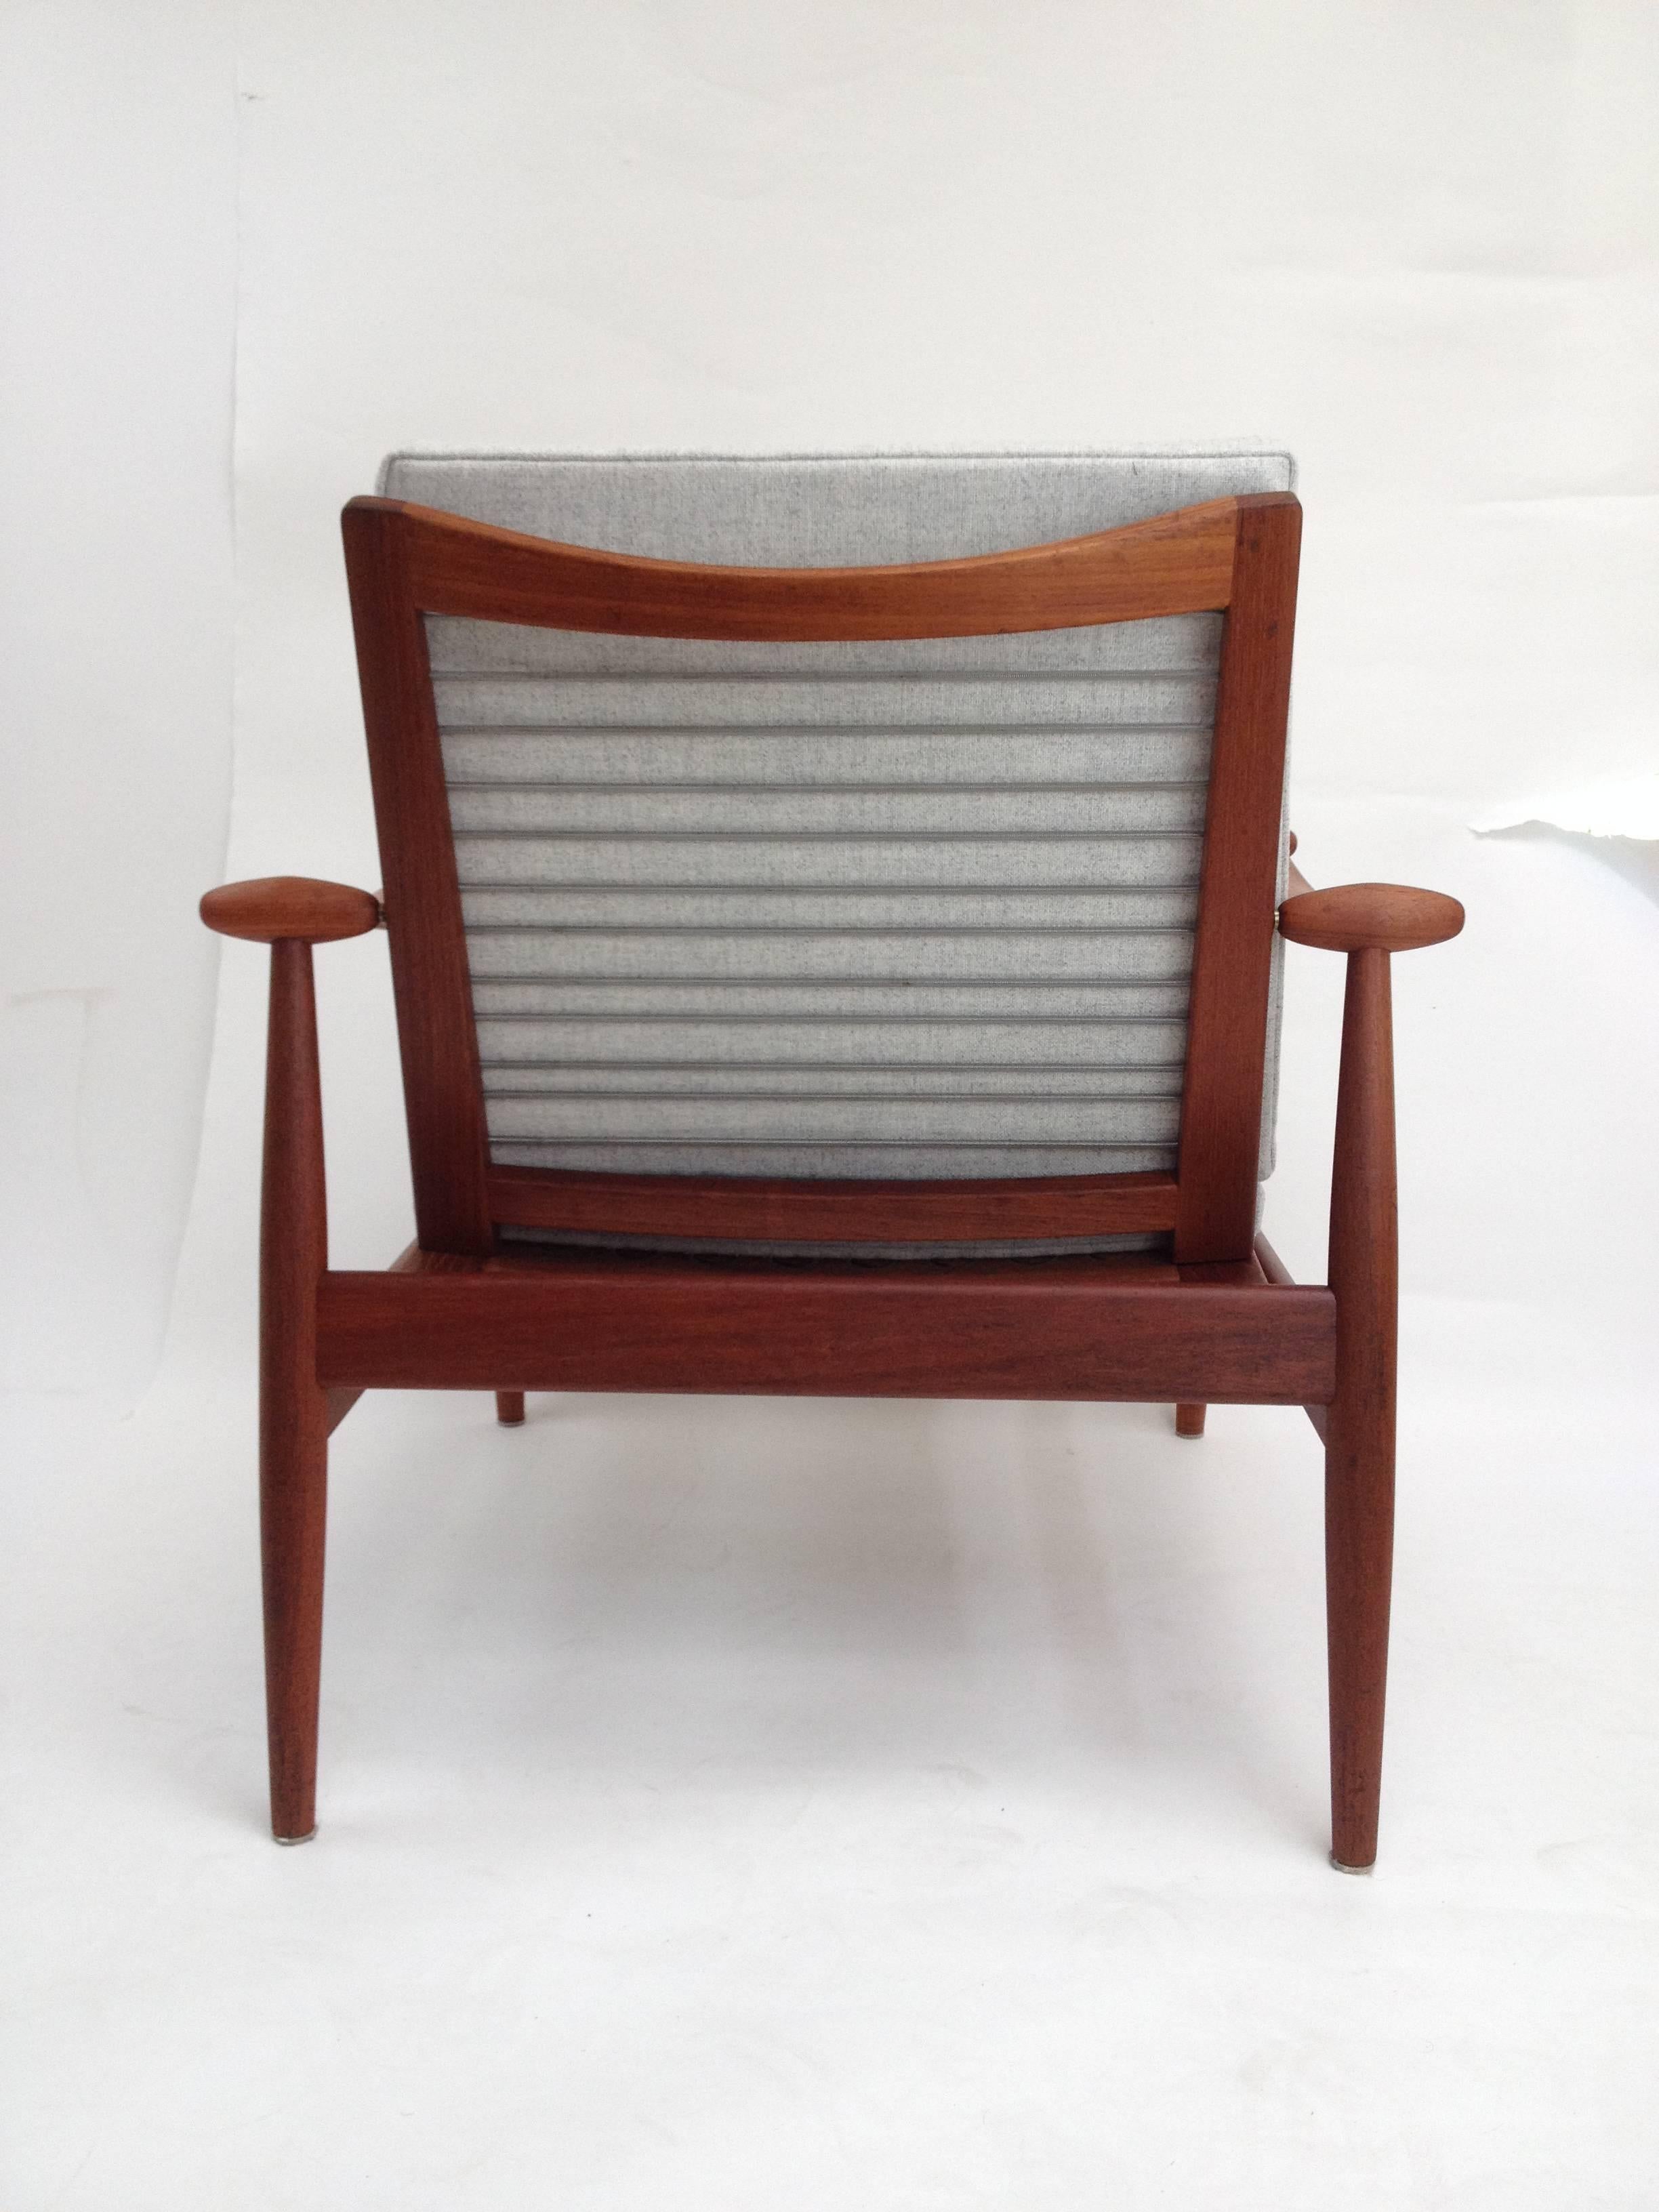 1950s Danish Teak Easy Chair Designed by Finn Juhl for France & Daverkosen For Sale 3